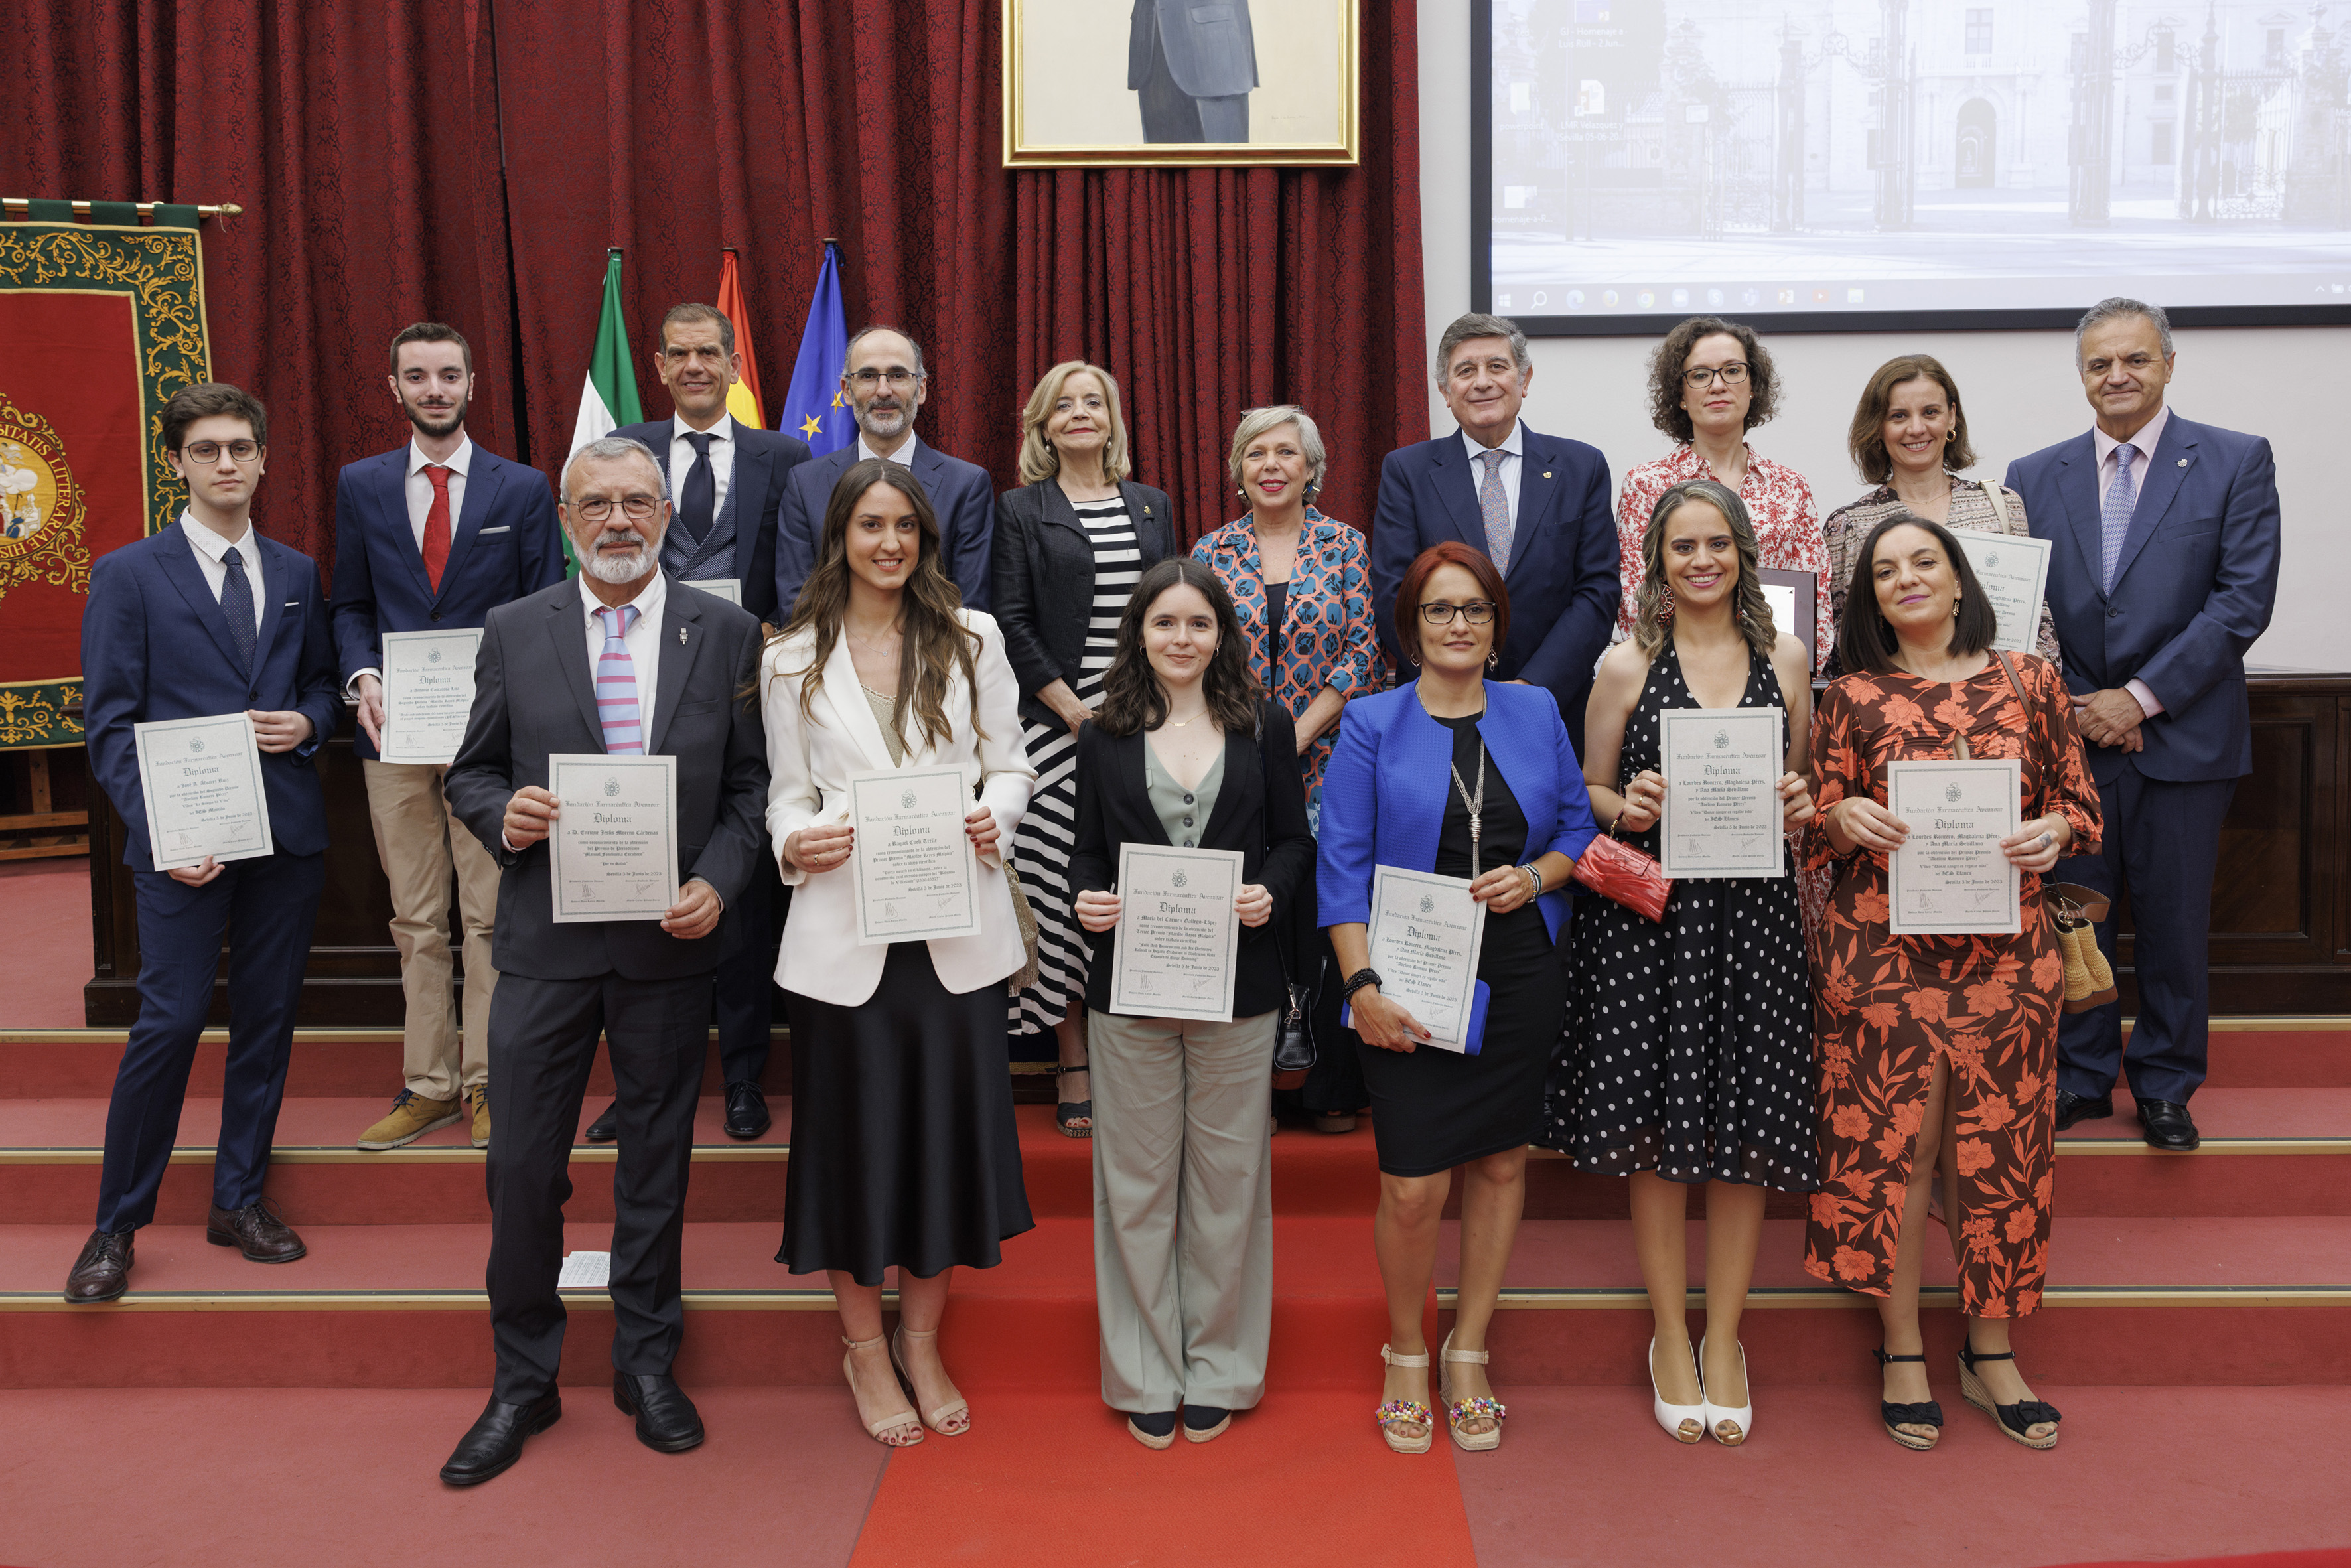 Velázquez y Sevilla, protagonistas de la entrega de premios de la Fundación Farmacéutica Avenzoar